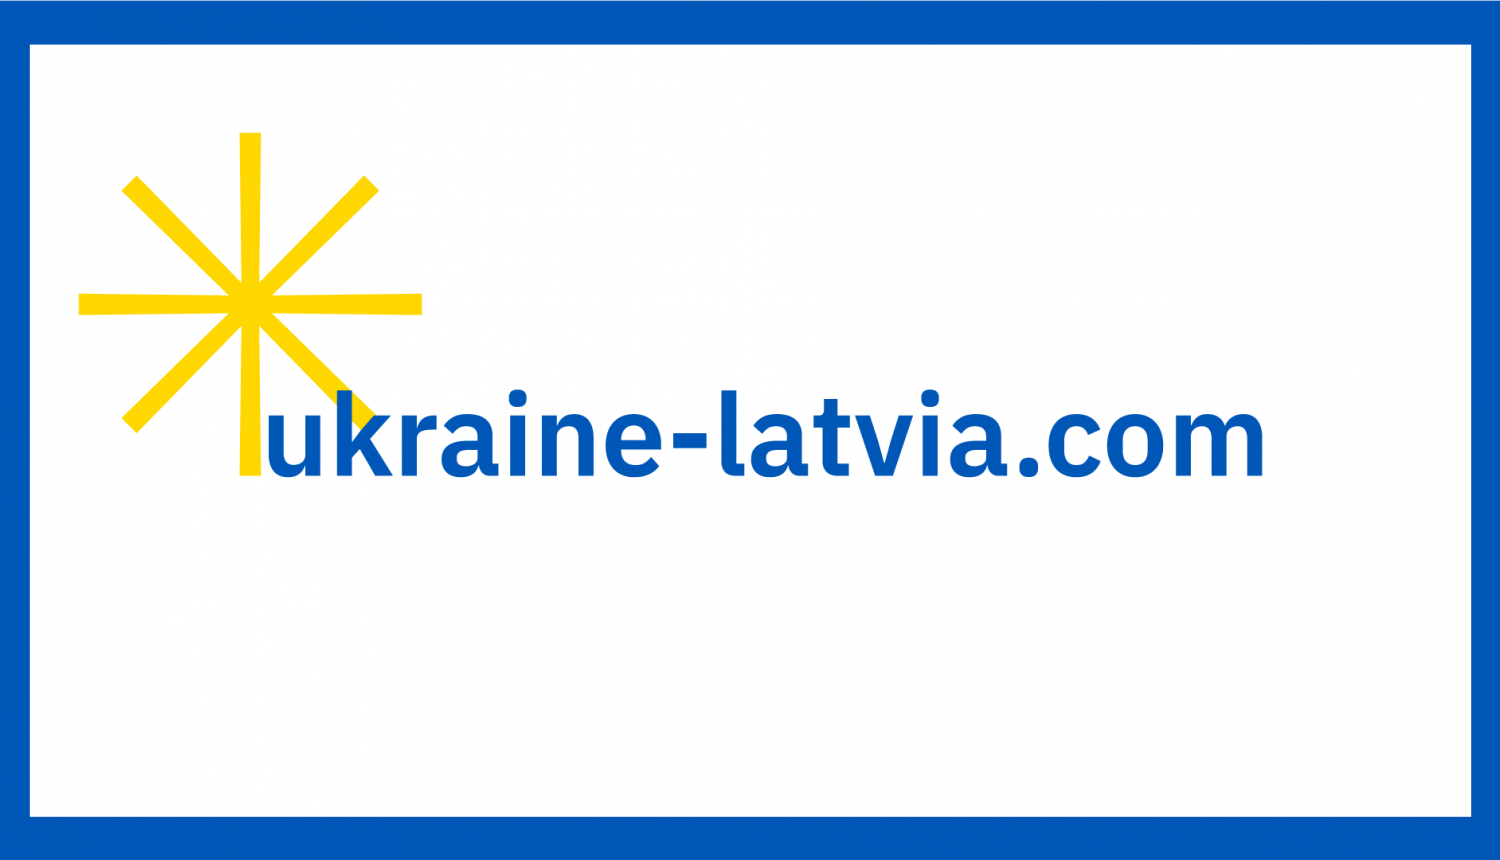 ukraine-latvia